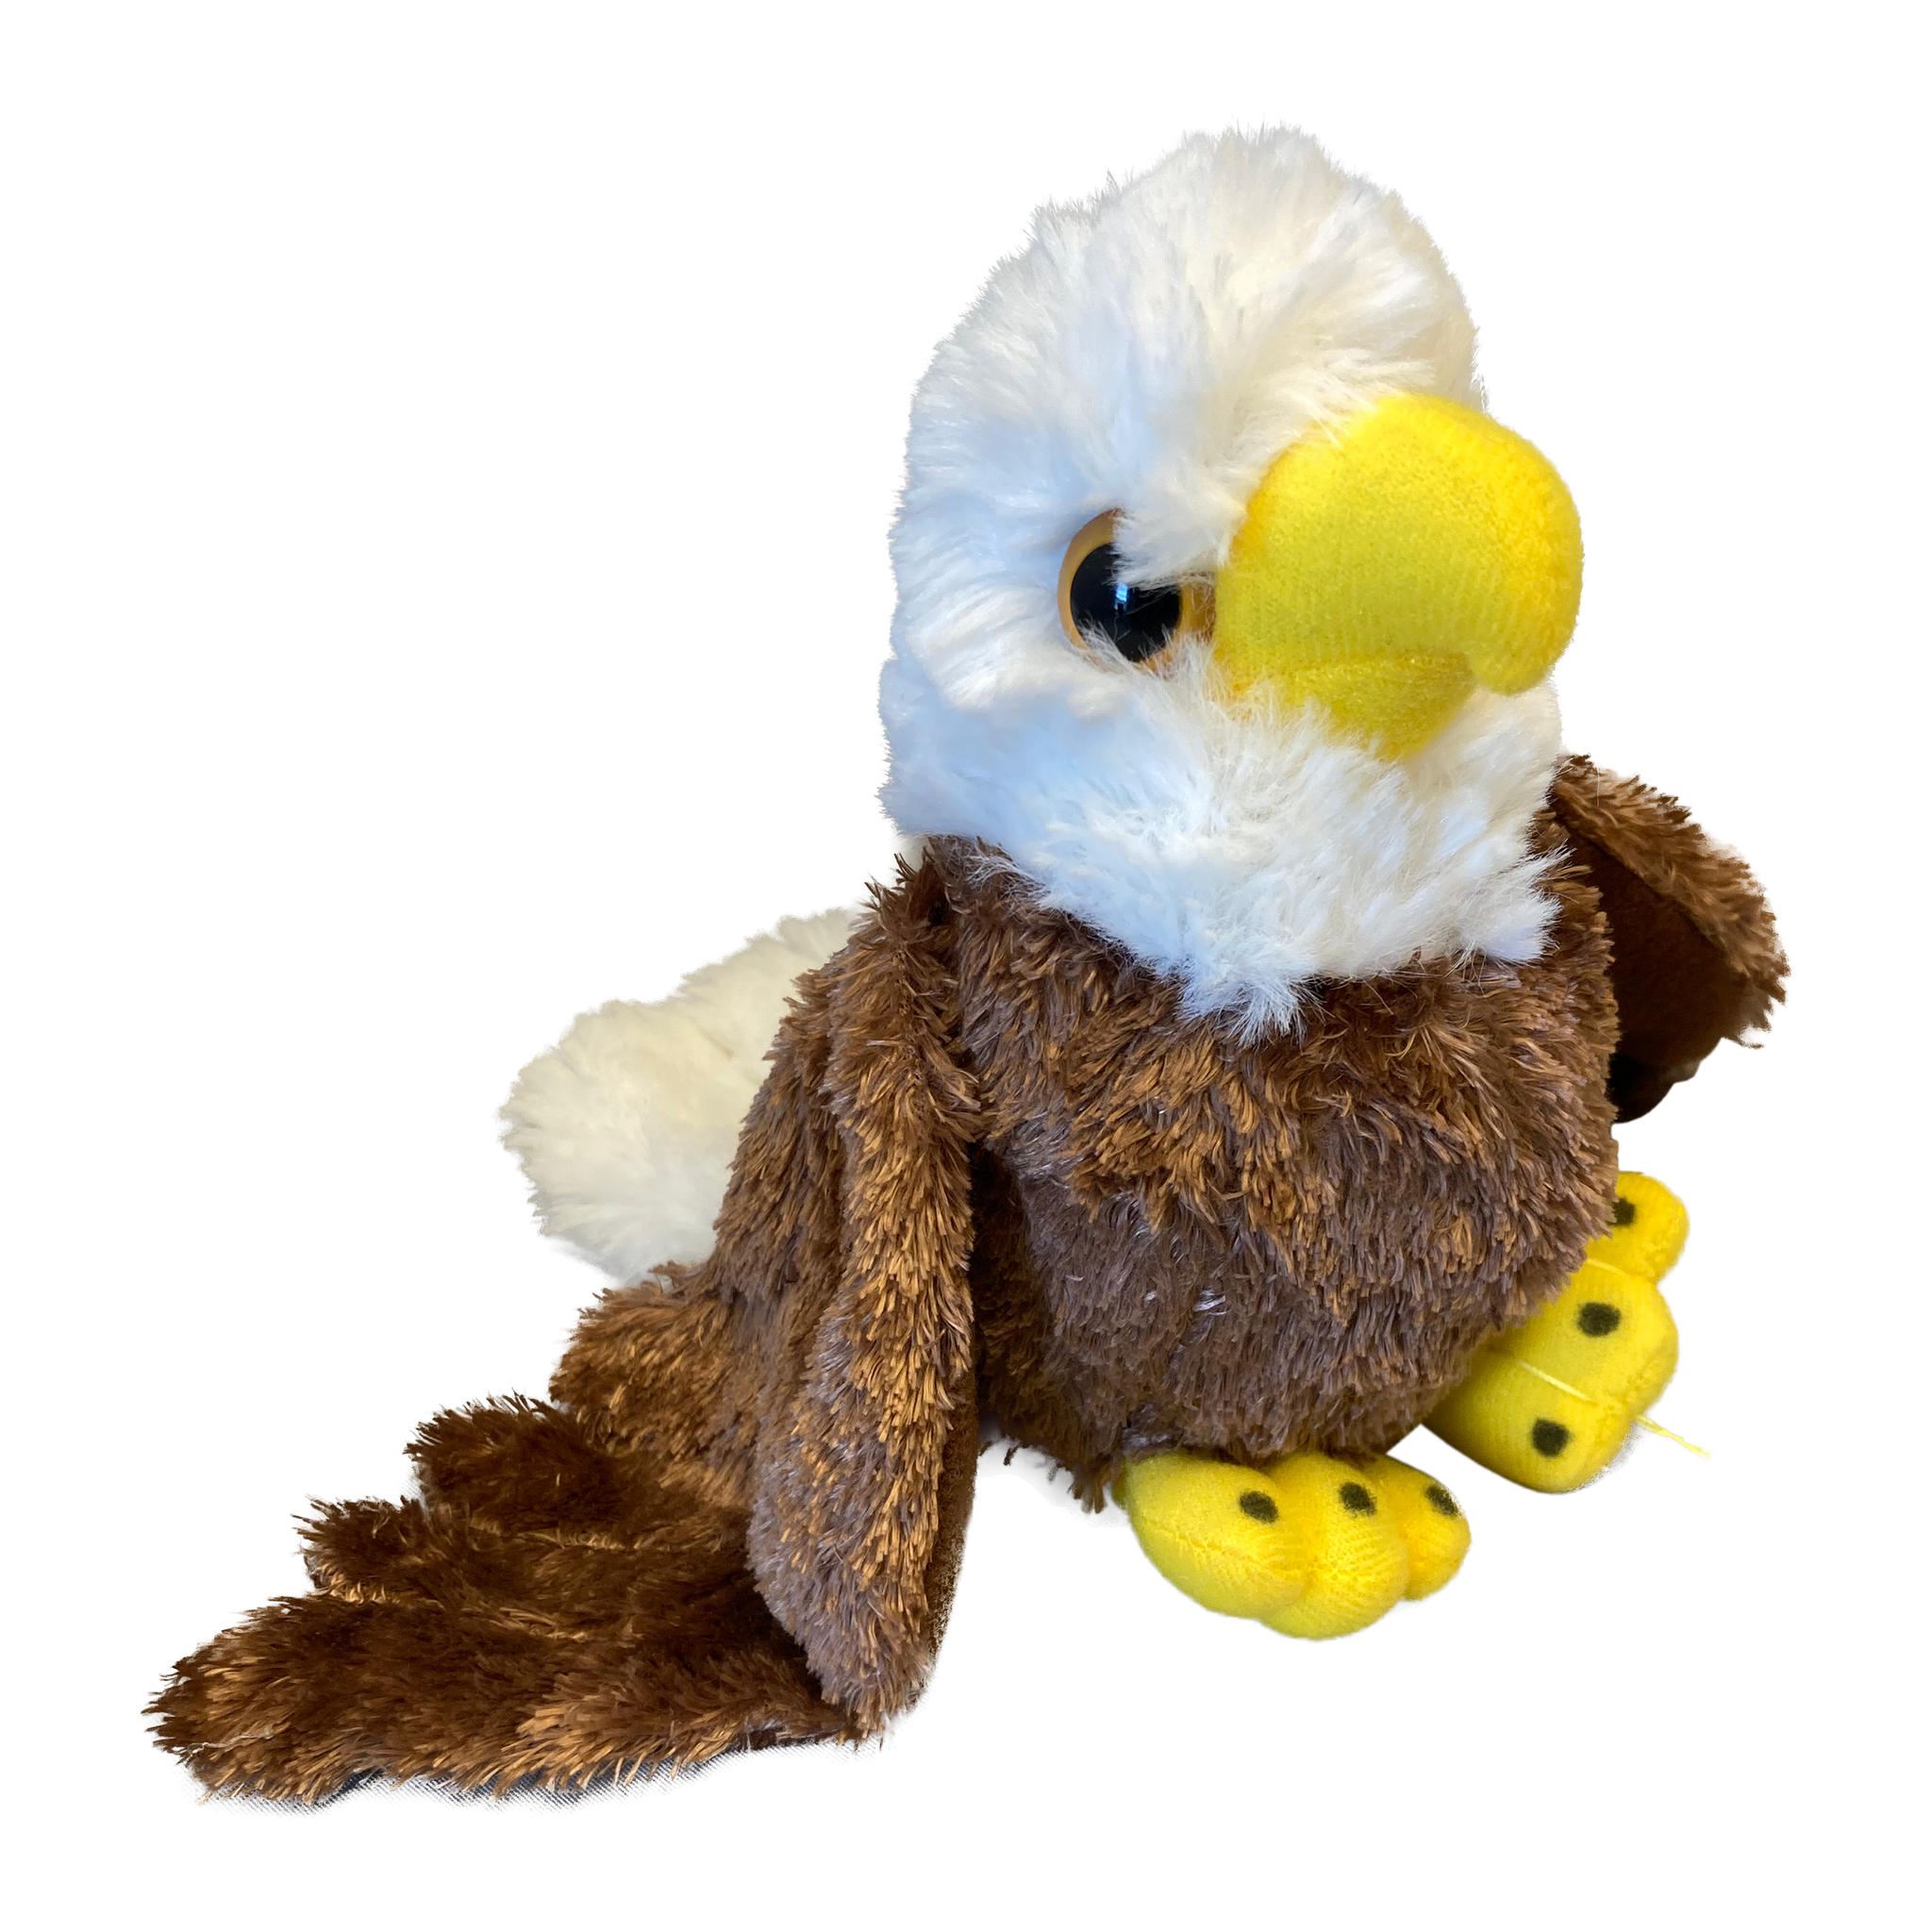 Soft and Fluffy Plush Bald Eagle